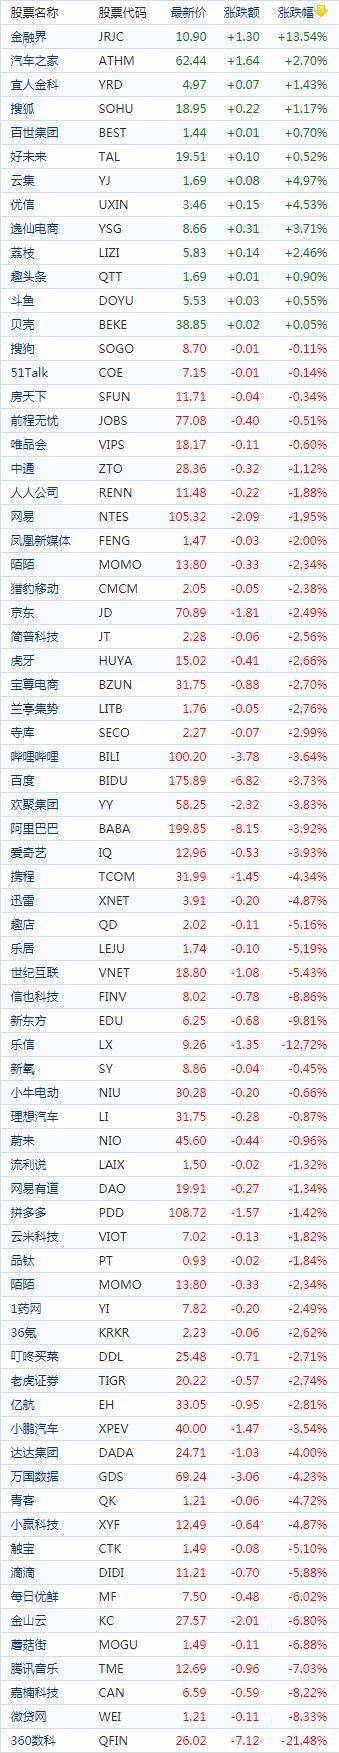 中国概念股周四收盘普遍下跌 拼多多下跌1.42%报收108.72美元